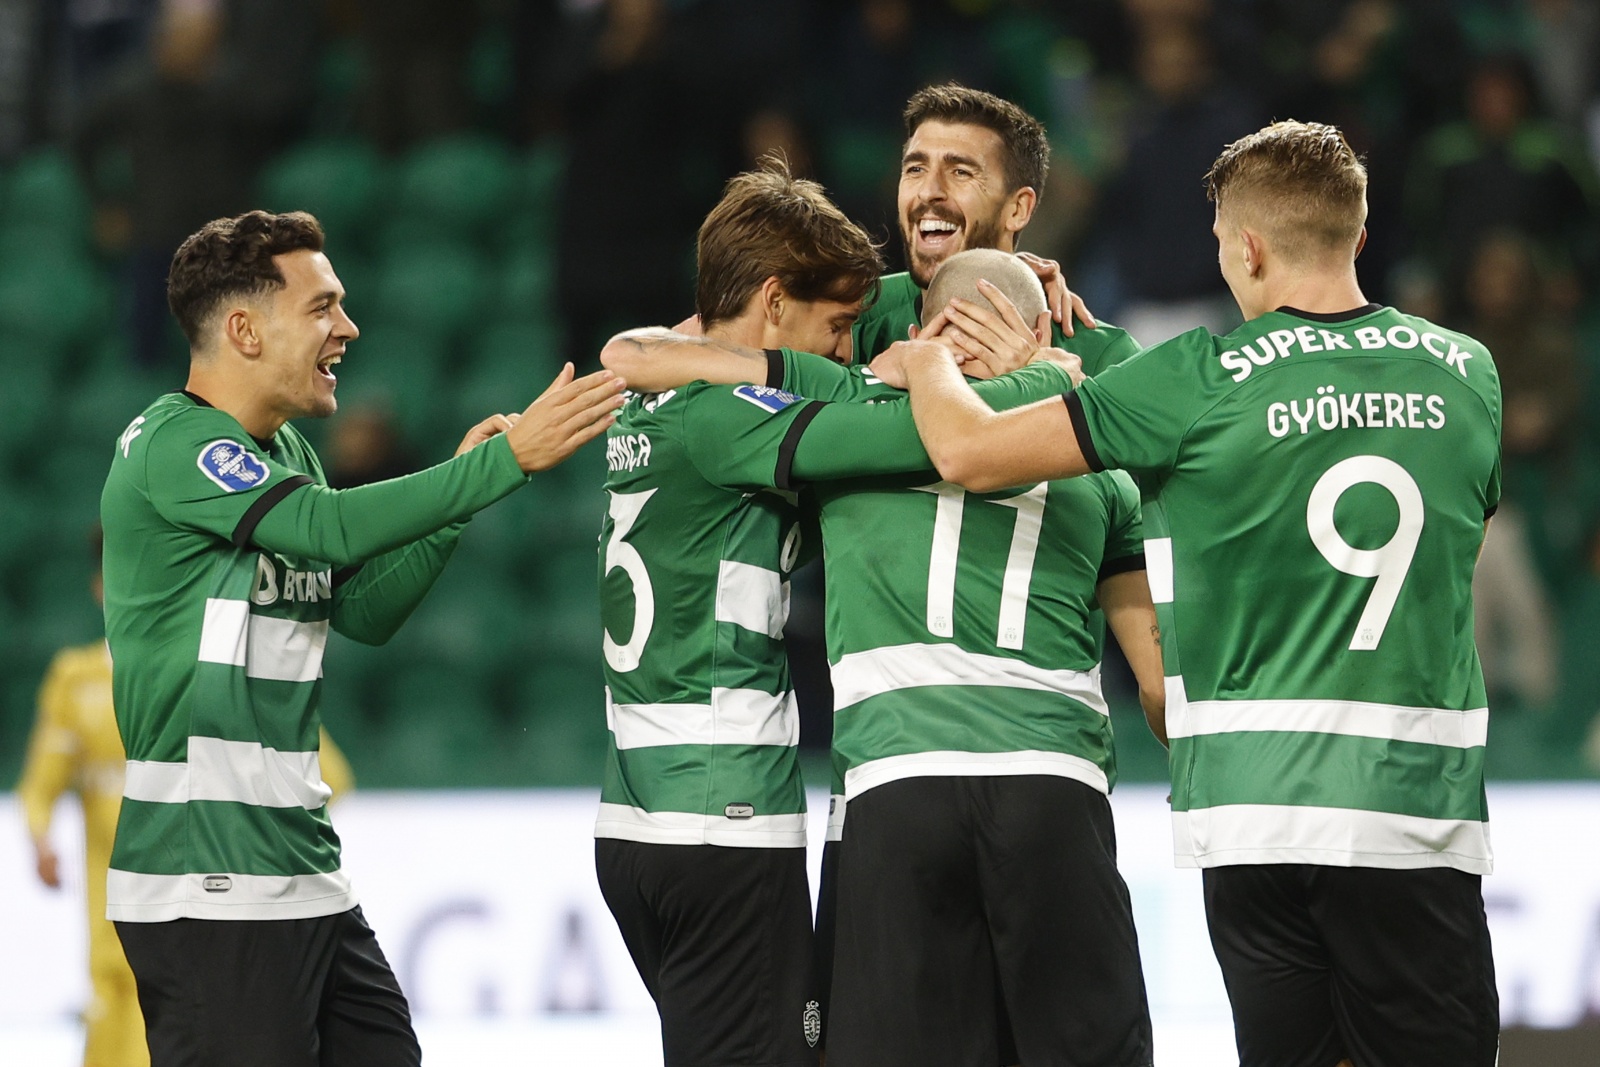 Liga Portuguesa de Futebol: Classificação após nona jornada